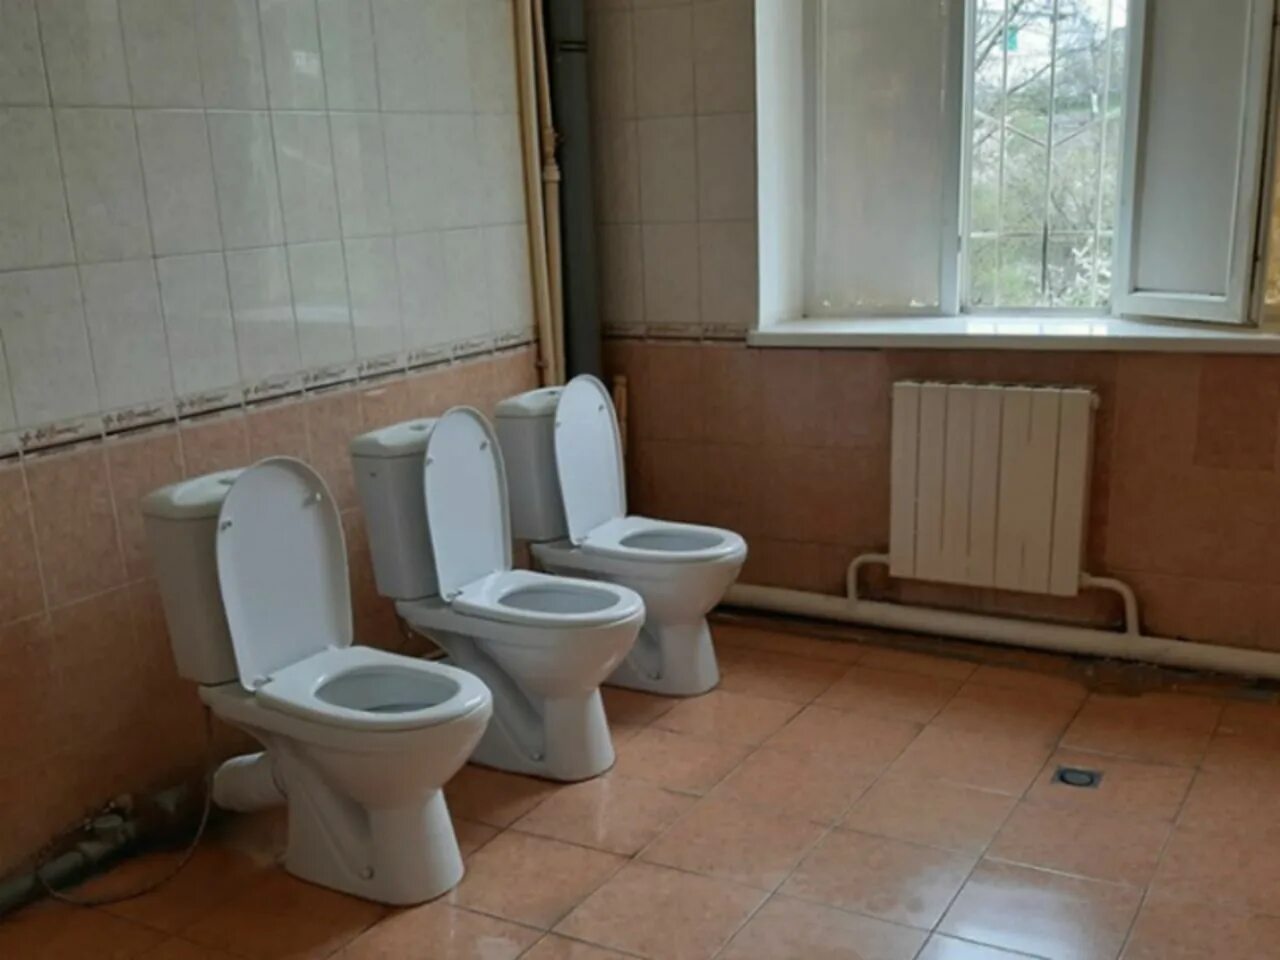 Унитаз в школе. Туалетная комната в школе. Унитазы в школьных учреждениях. Советские унитазы в школе.